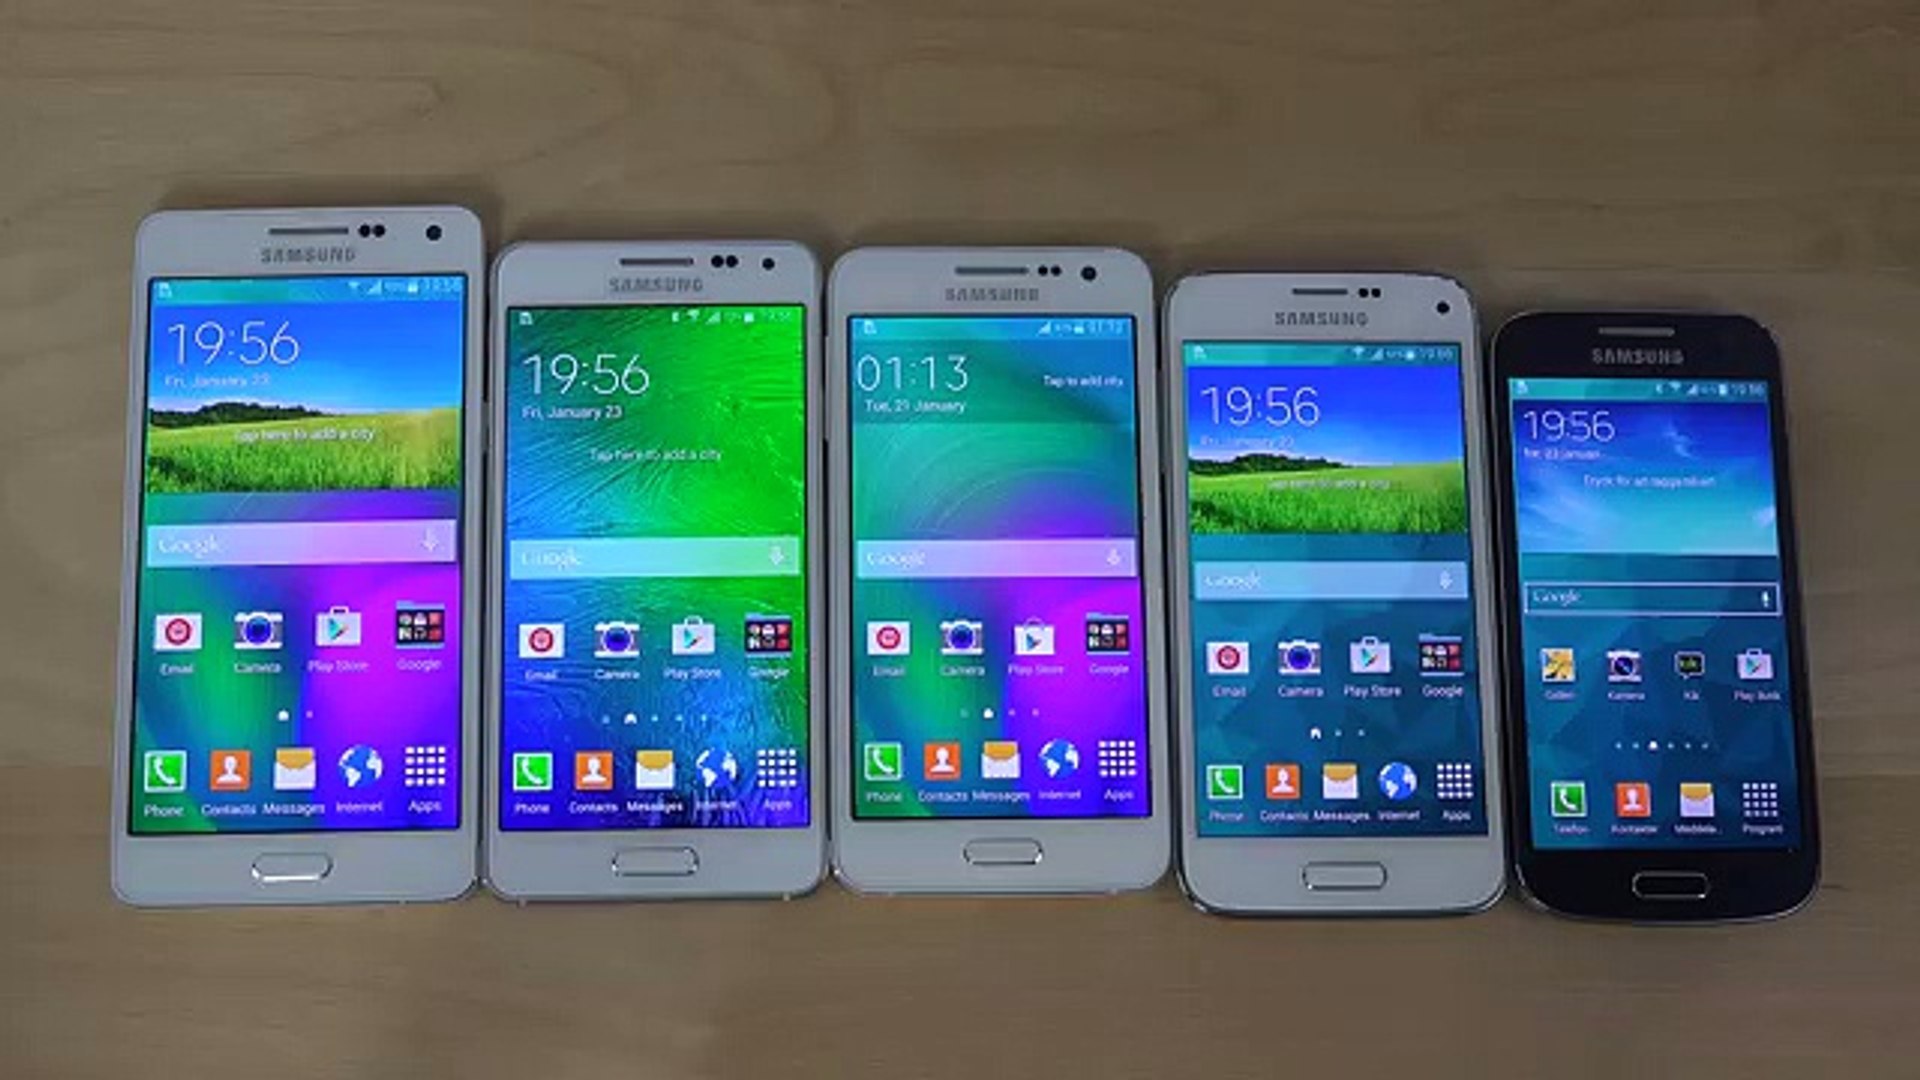 Какой самсунг а53. Samsung Galaxy a04s. Samsung Galaxy 5 Mini. Samsung Galaxy 3 Mini. Samsung Galaxy s4 Mini.